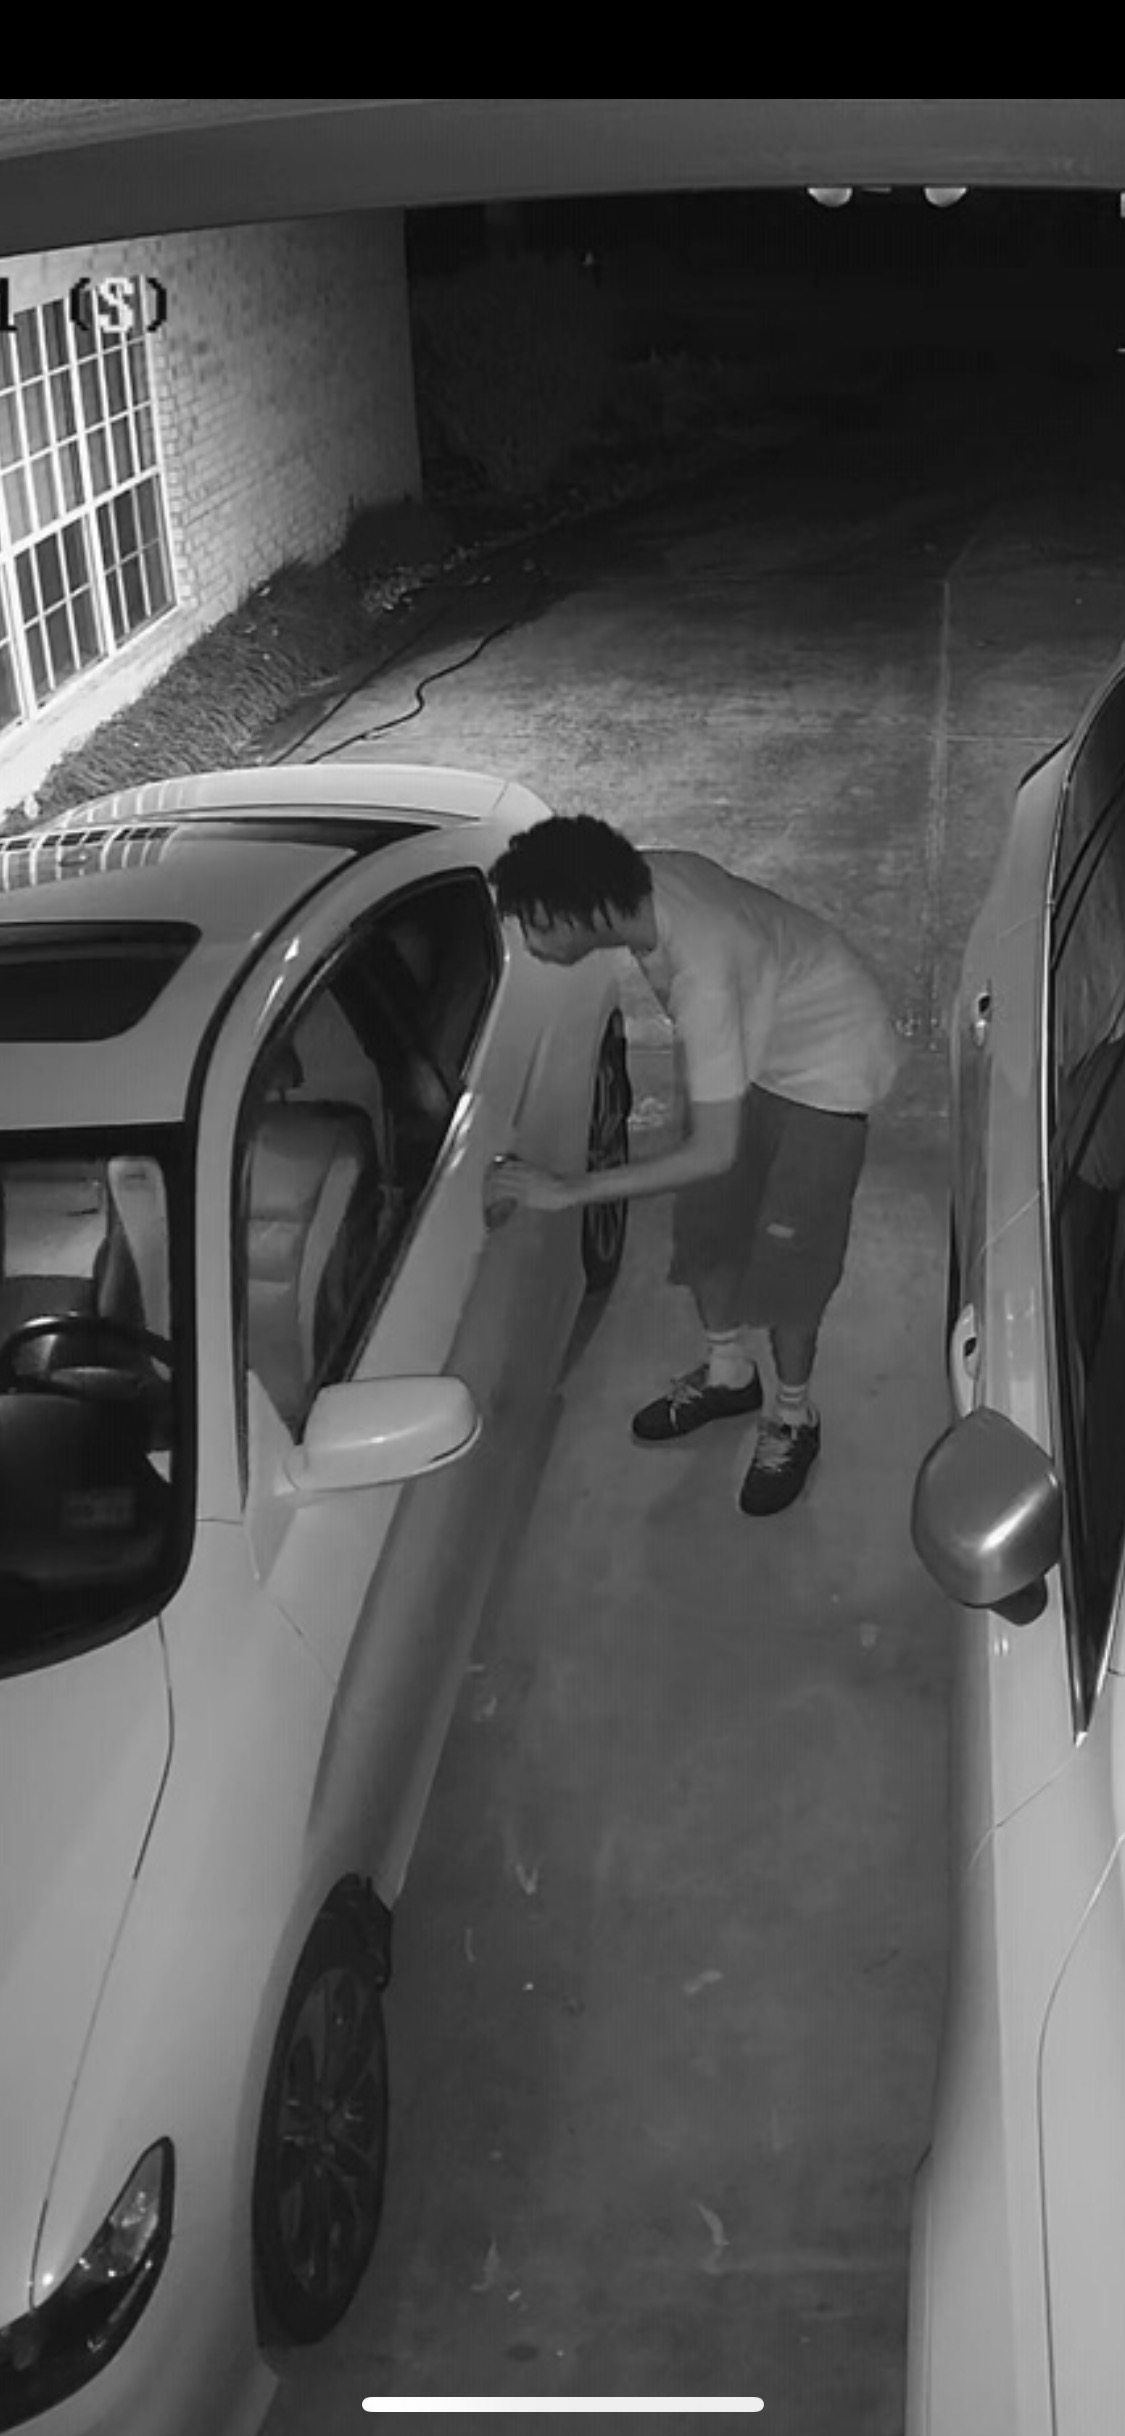 Photo of suspect pulling on vehicle door handle.